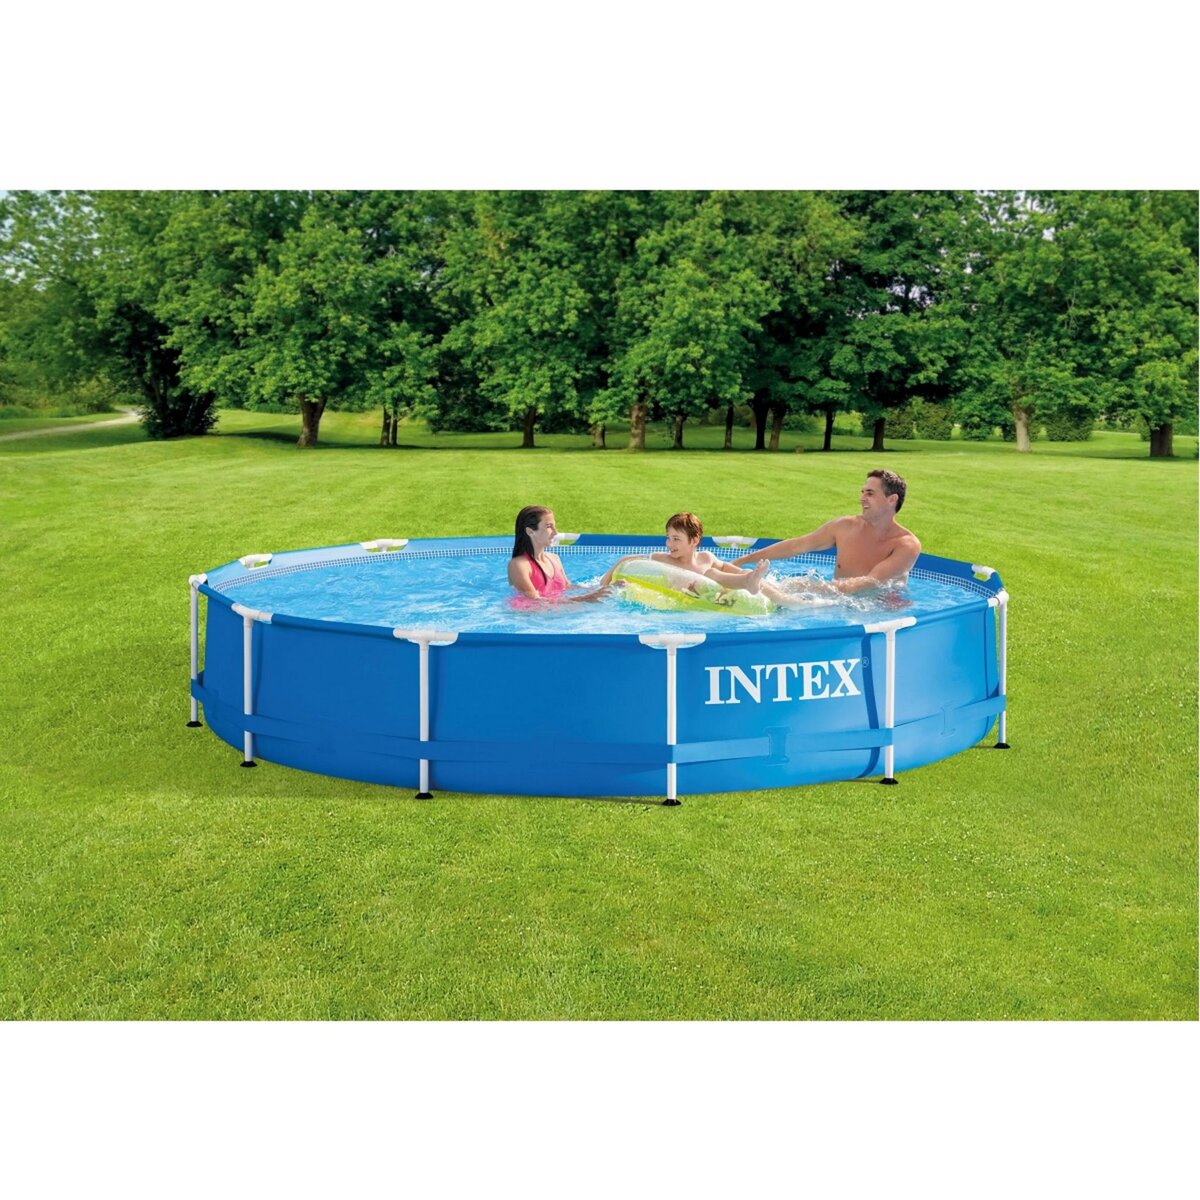 Kit d'accessoires de base Intex pour entretien de piscine